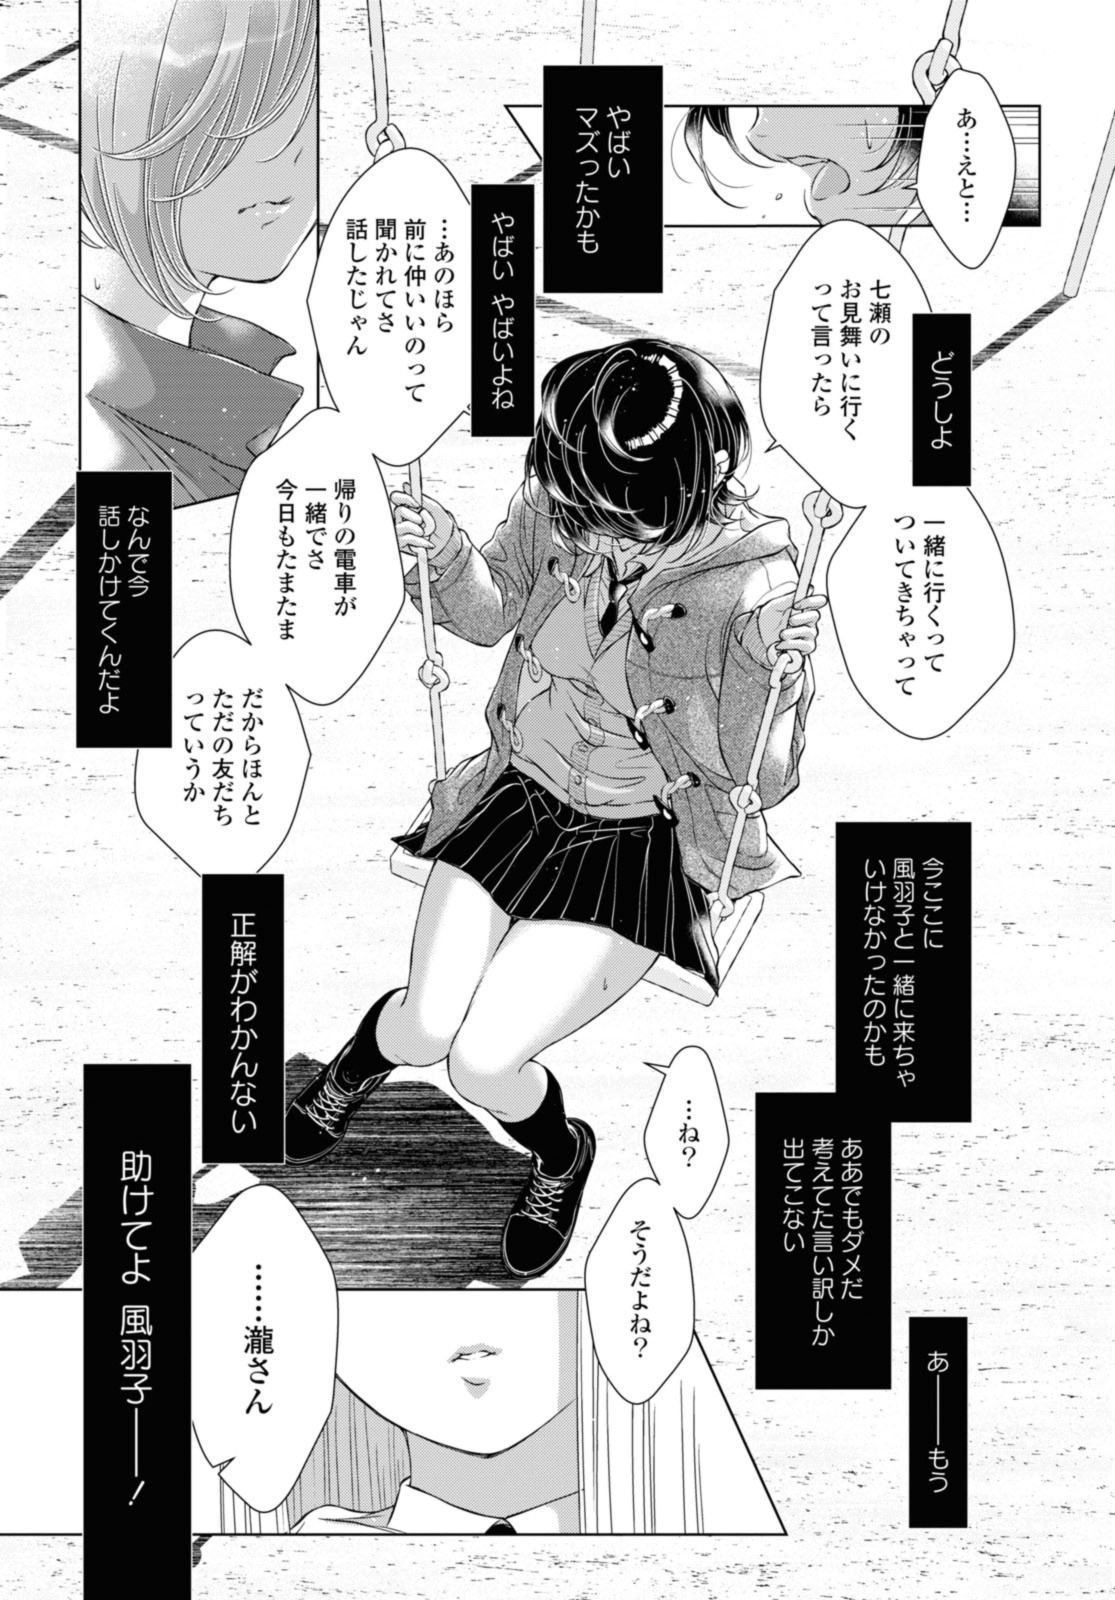 Kyou wa Kanojo ga Inai Kara - Chapter 16.3 - Page 3